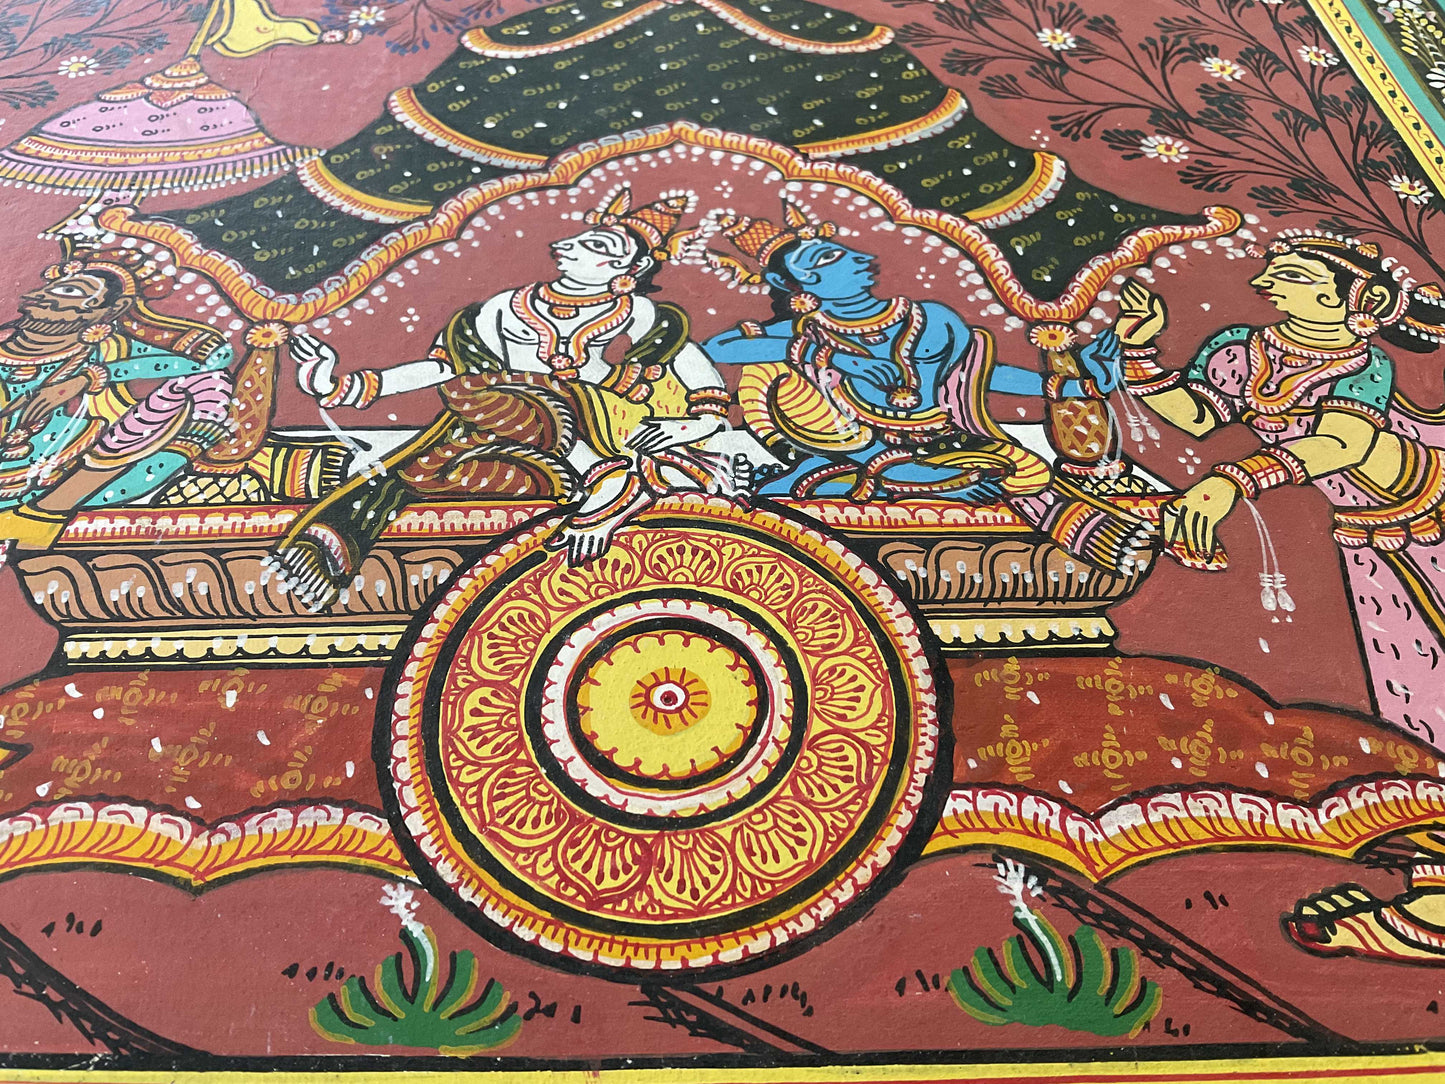 Beautiful Chariot and Kanha - Pattchitra Painting wallart.love